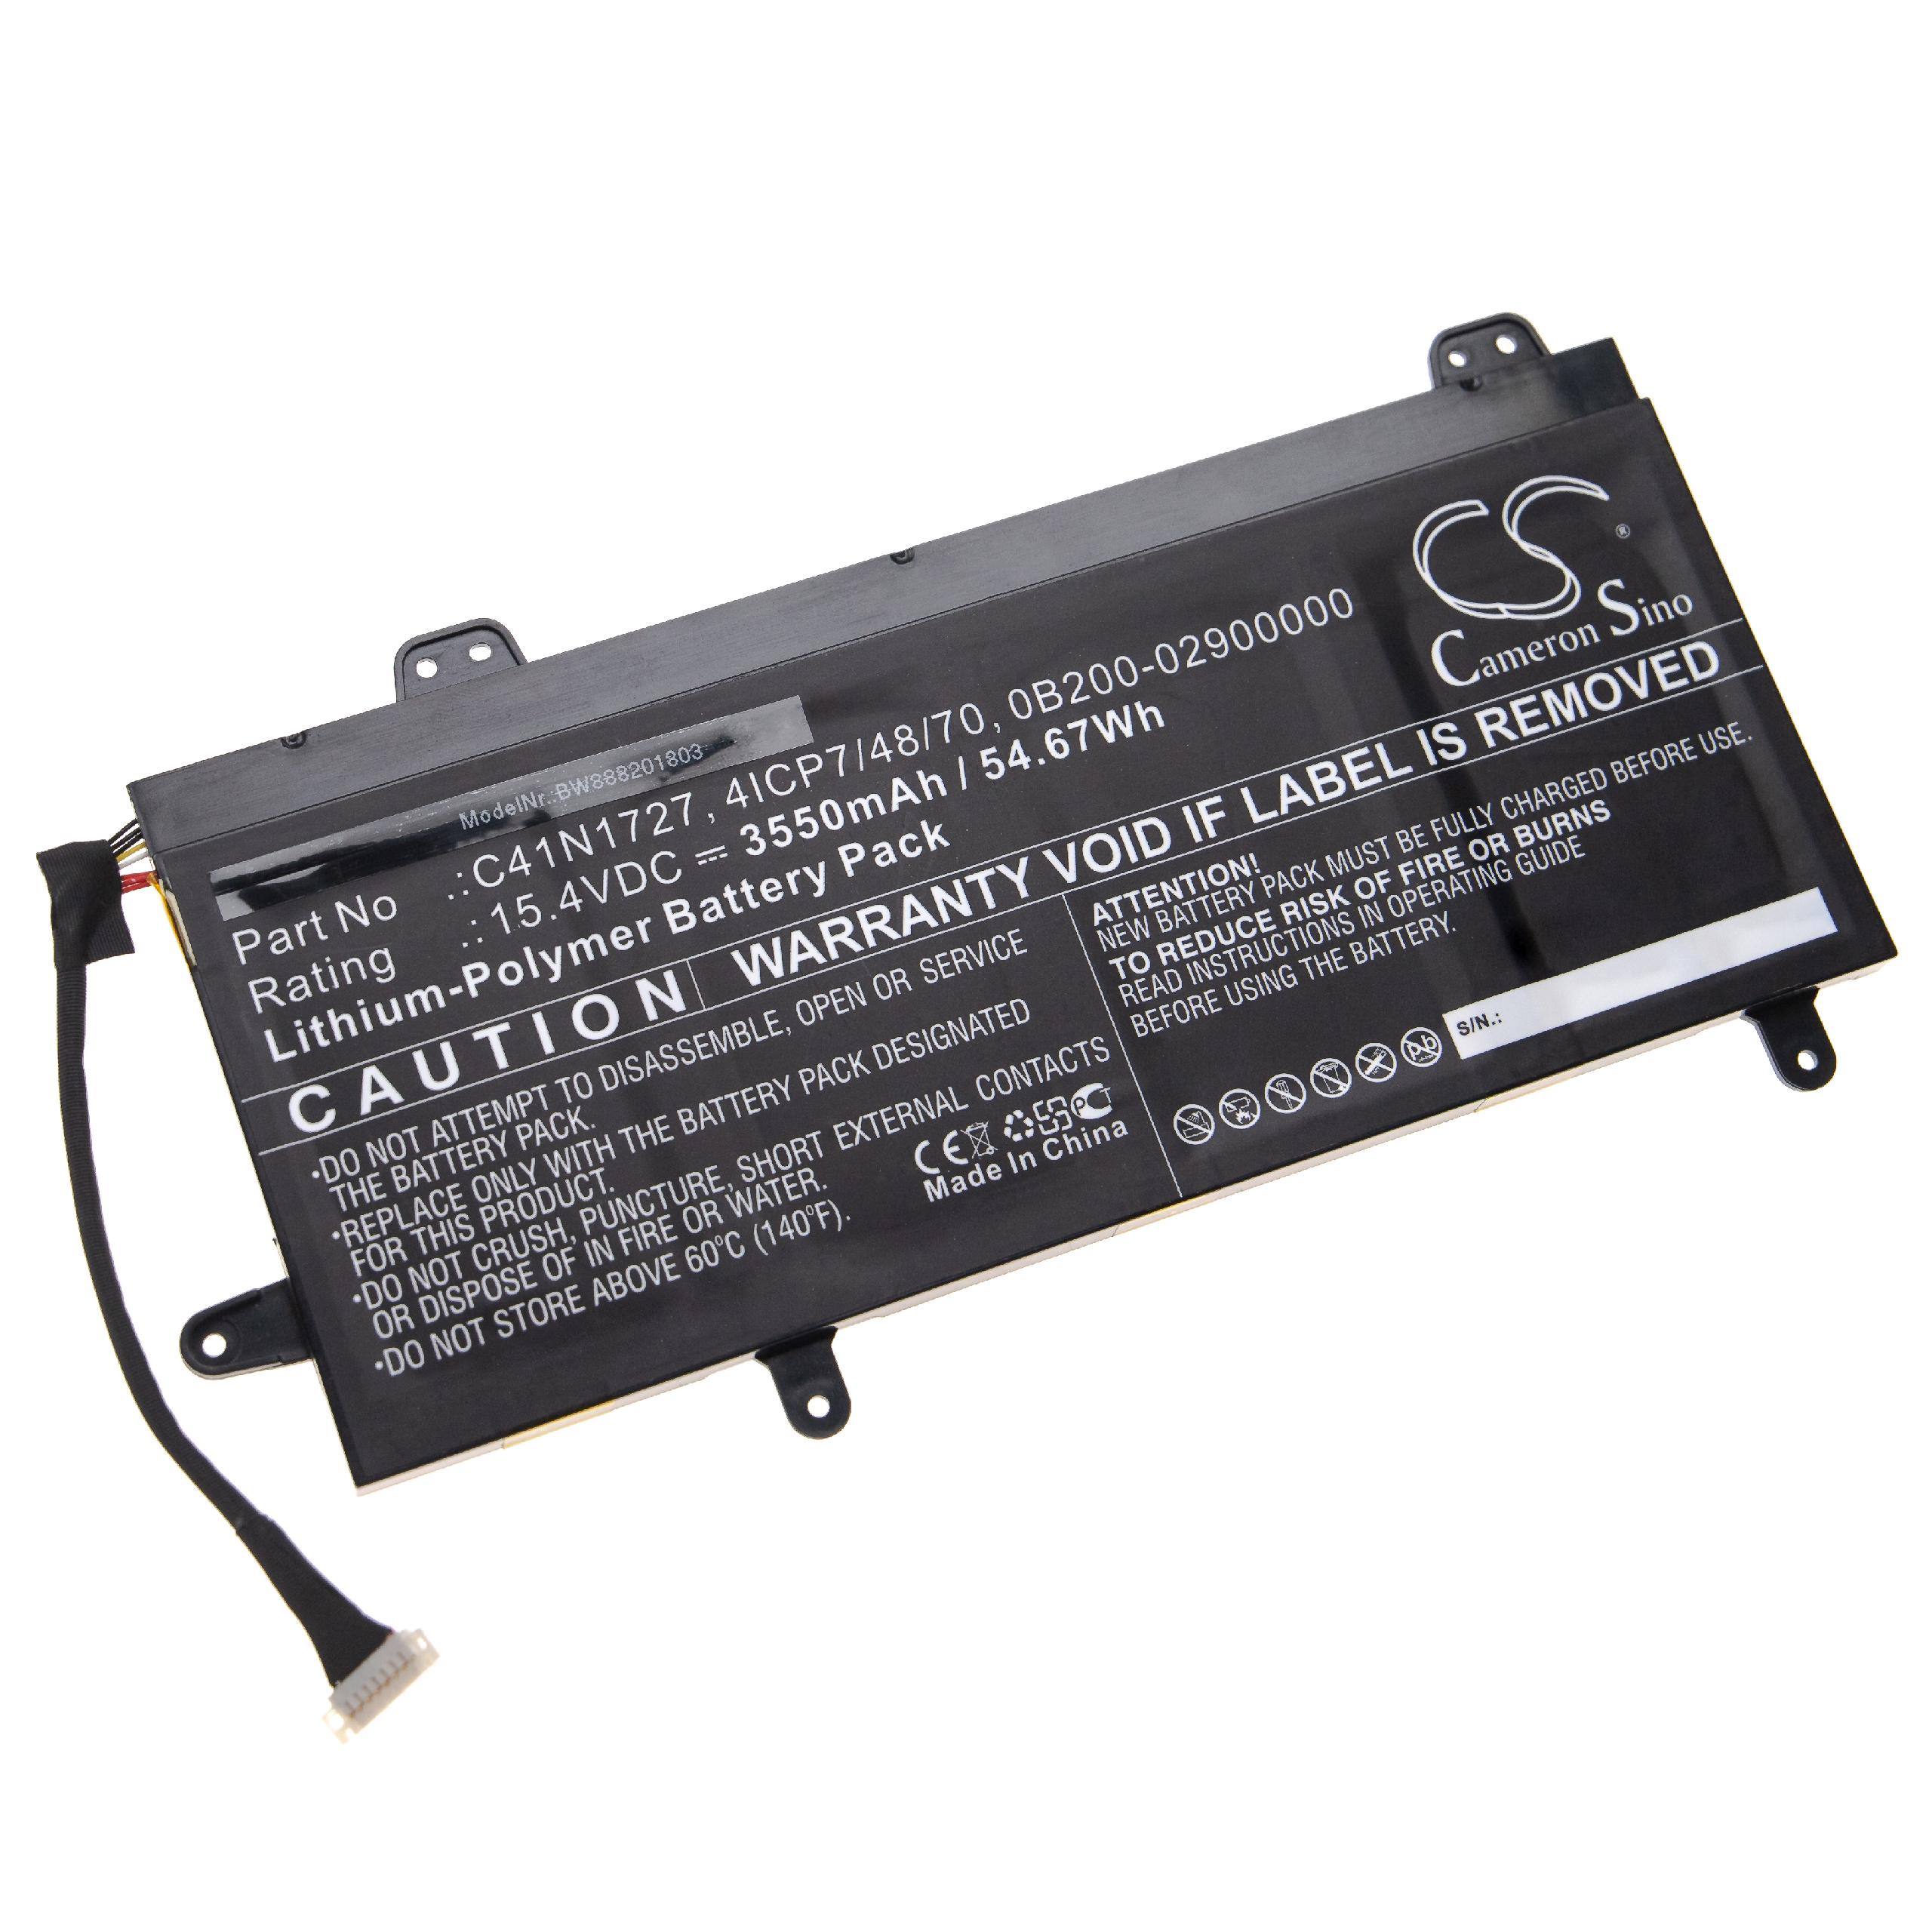 Batterie remplace Asus 4ICP7/48/70, 0B200-02900000 pour ordinateur portable - 3550mAh 15,4V Li-polymère